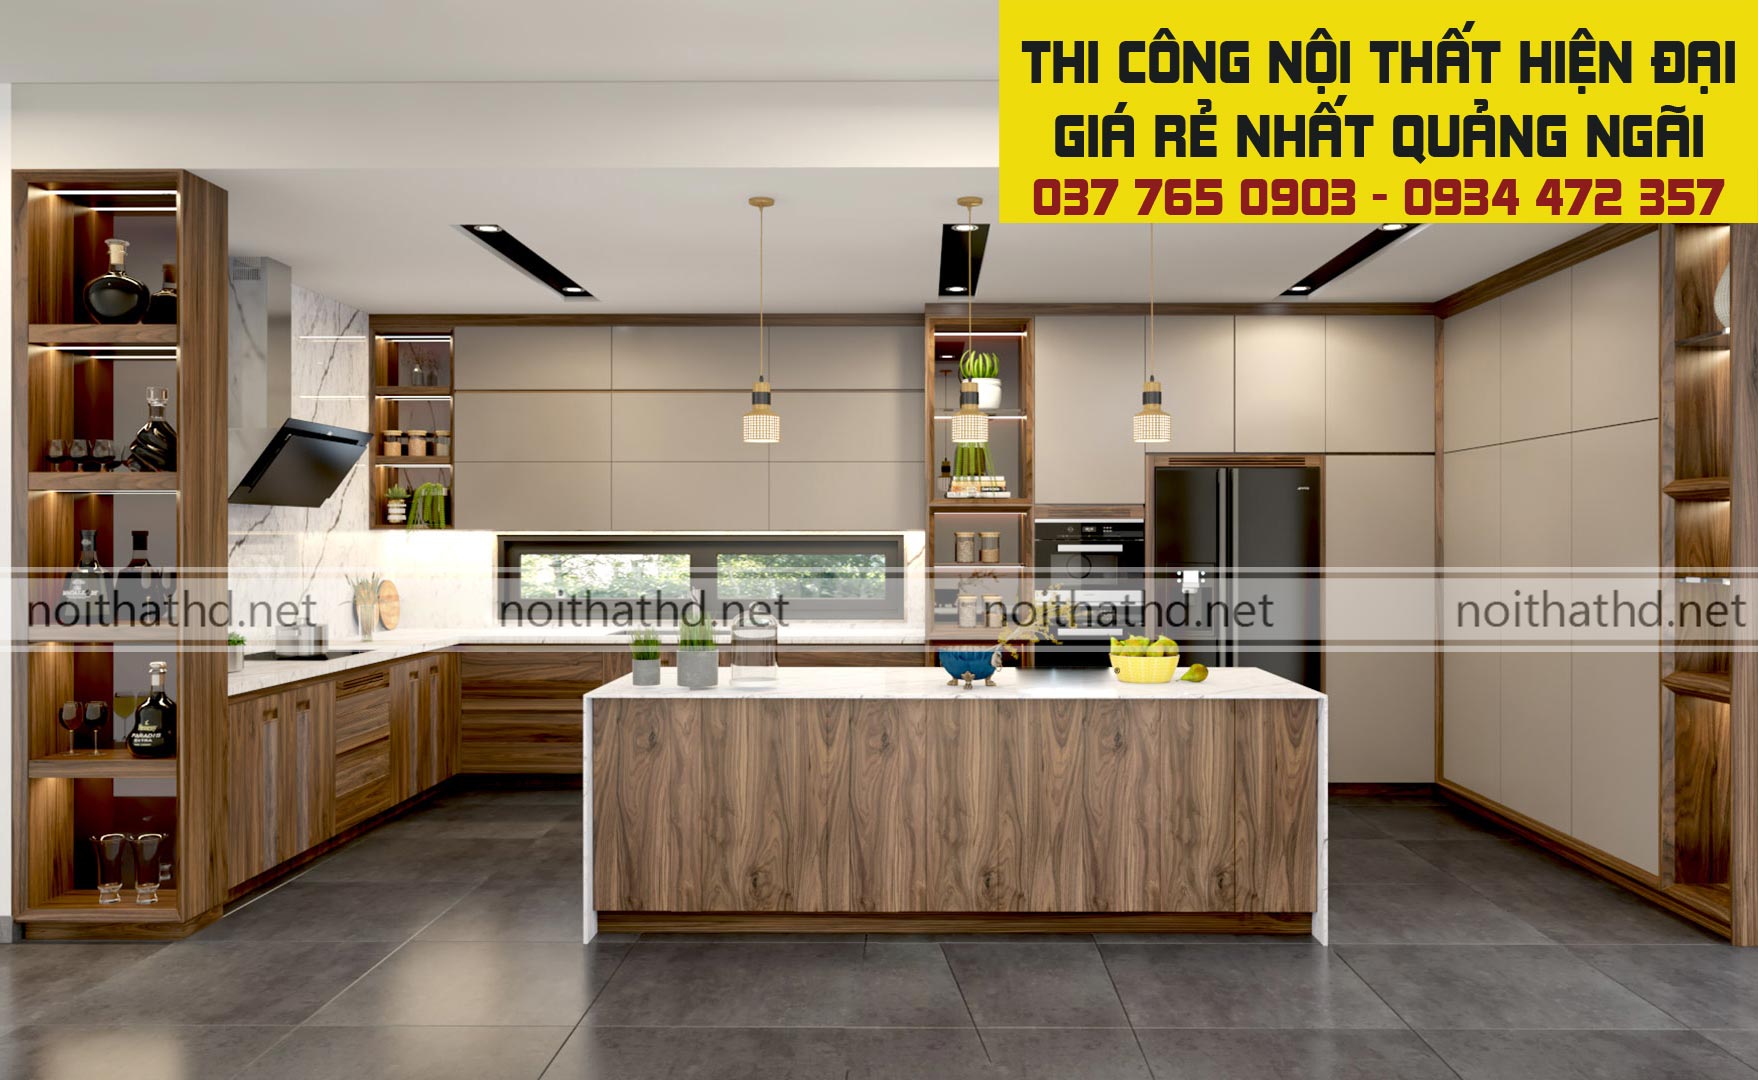 Một thiết kế nội thất phòng bếp hiện đại đẹp giá rẻ tại Quảng Ngãi